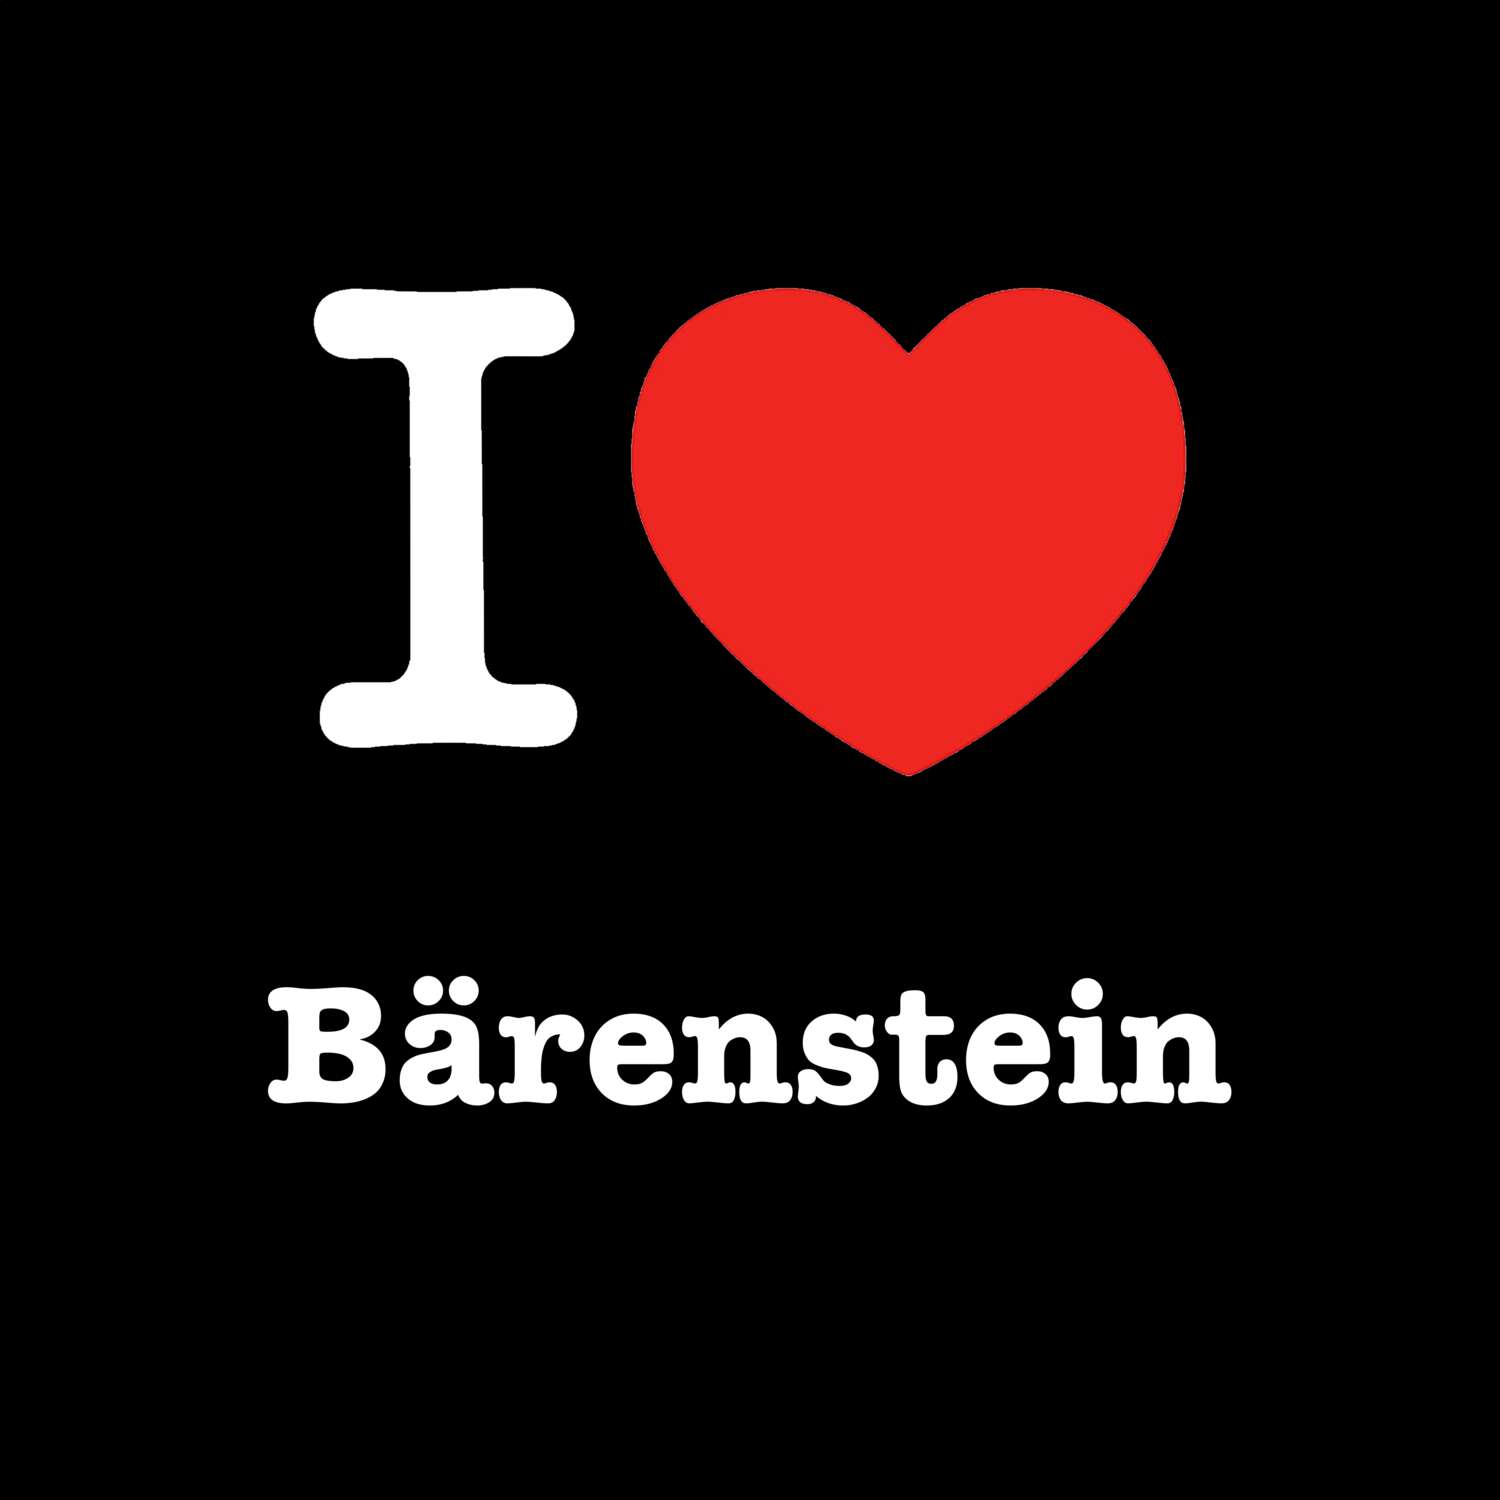 Bärenstein T-Shirt »I love«